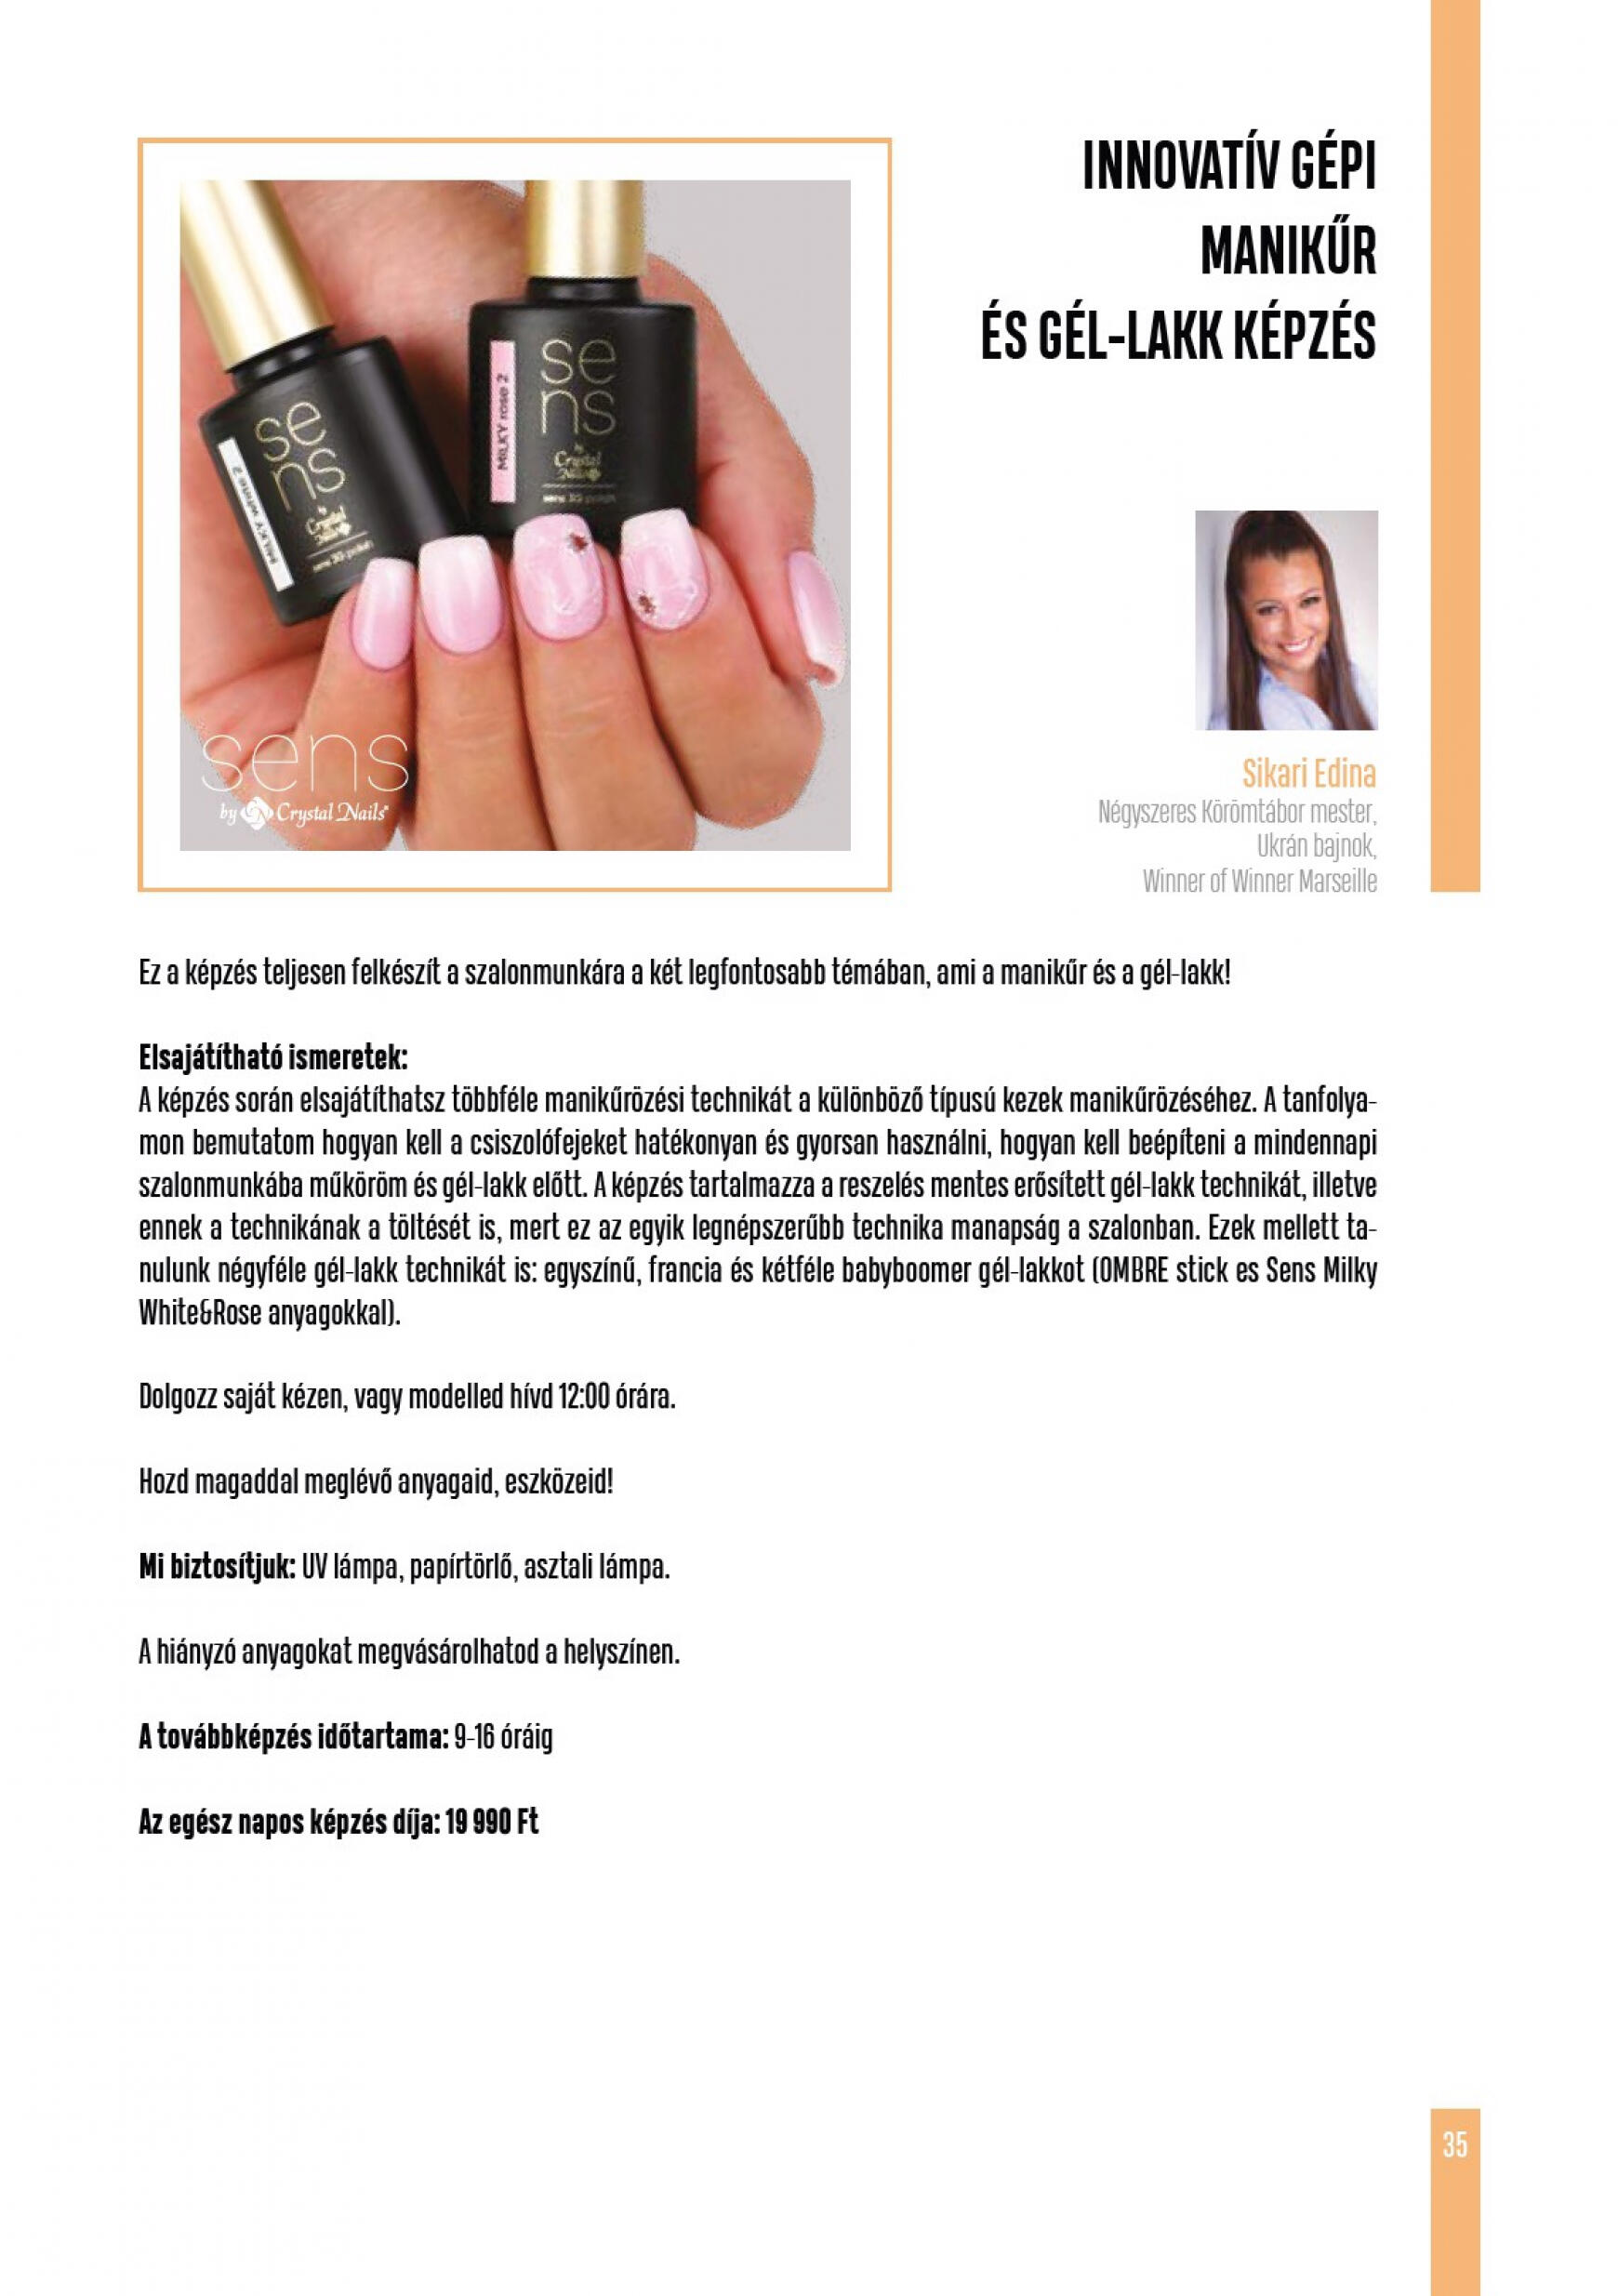 crystal-nails - Aktuális újság Crystal Nails - Tavasz/Nyár 05.01. - 08.31. - page: 35